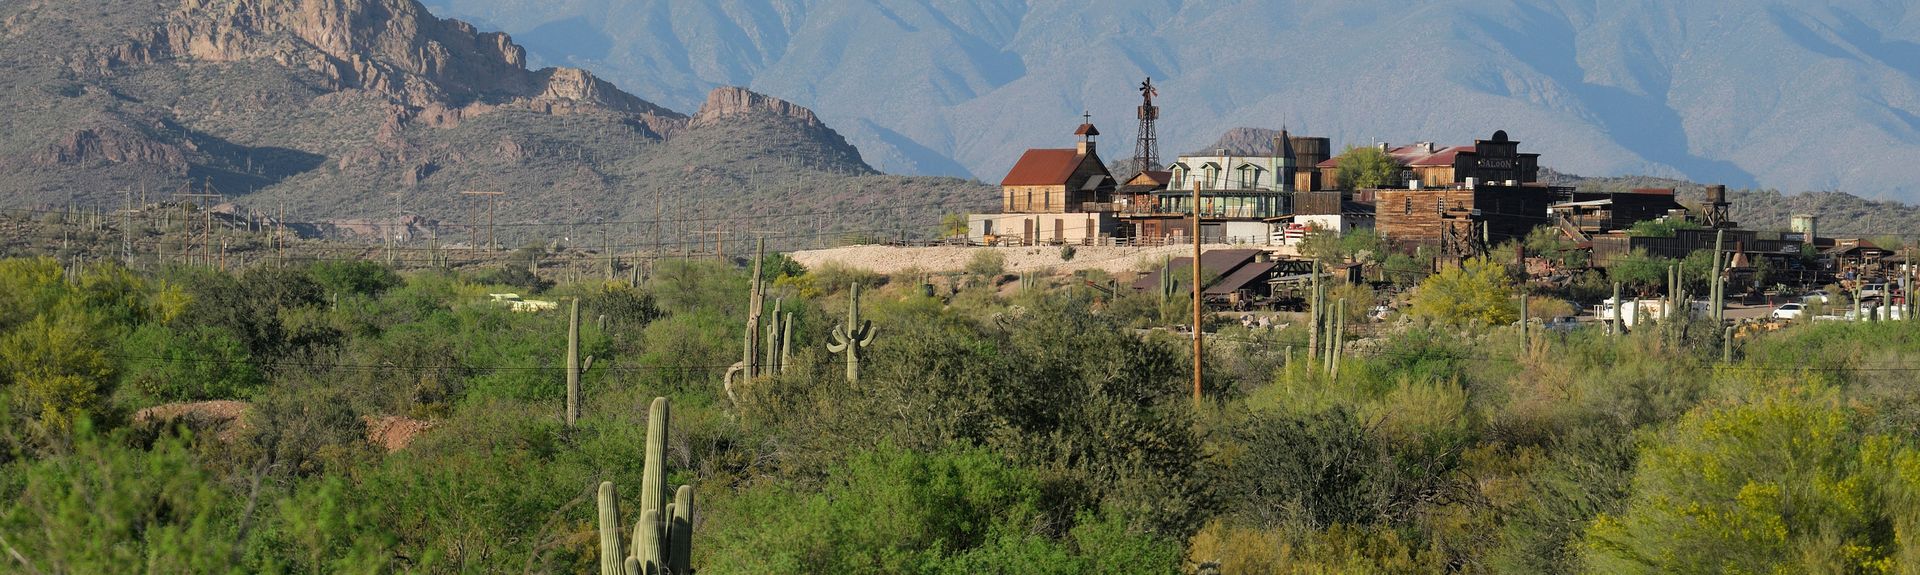 Ferienwohnung Apache Junction AZ US: Ferienhäuser mehr FeWo direkt